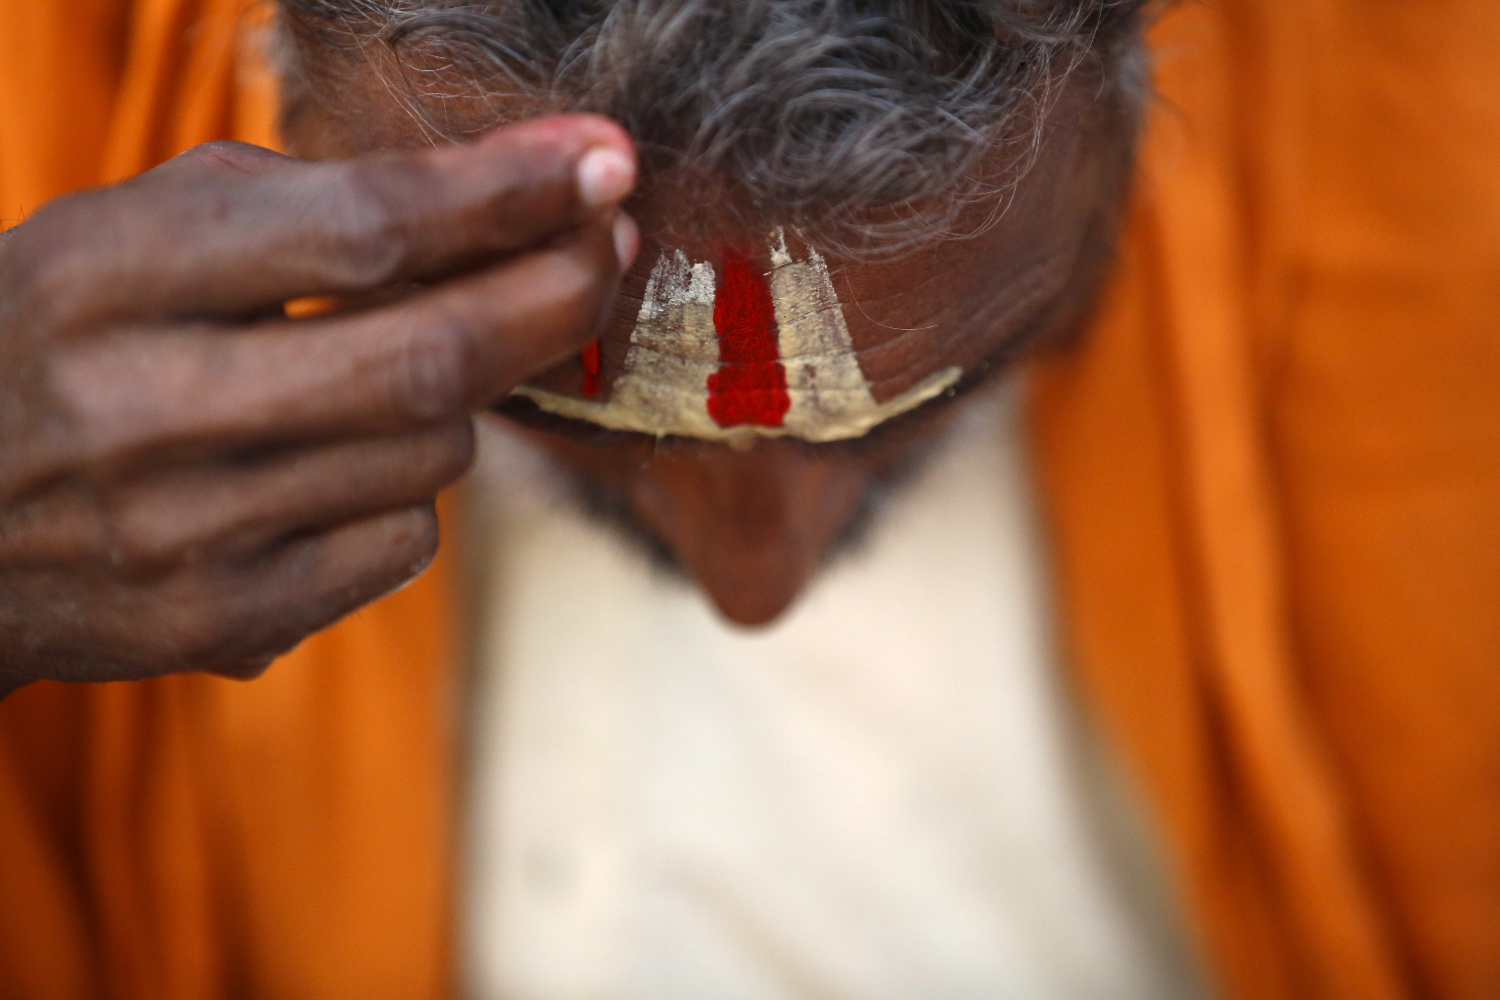 Matan a machetazos a otro sacerdote hindú en plena oleada de crímenes contra minorías